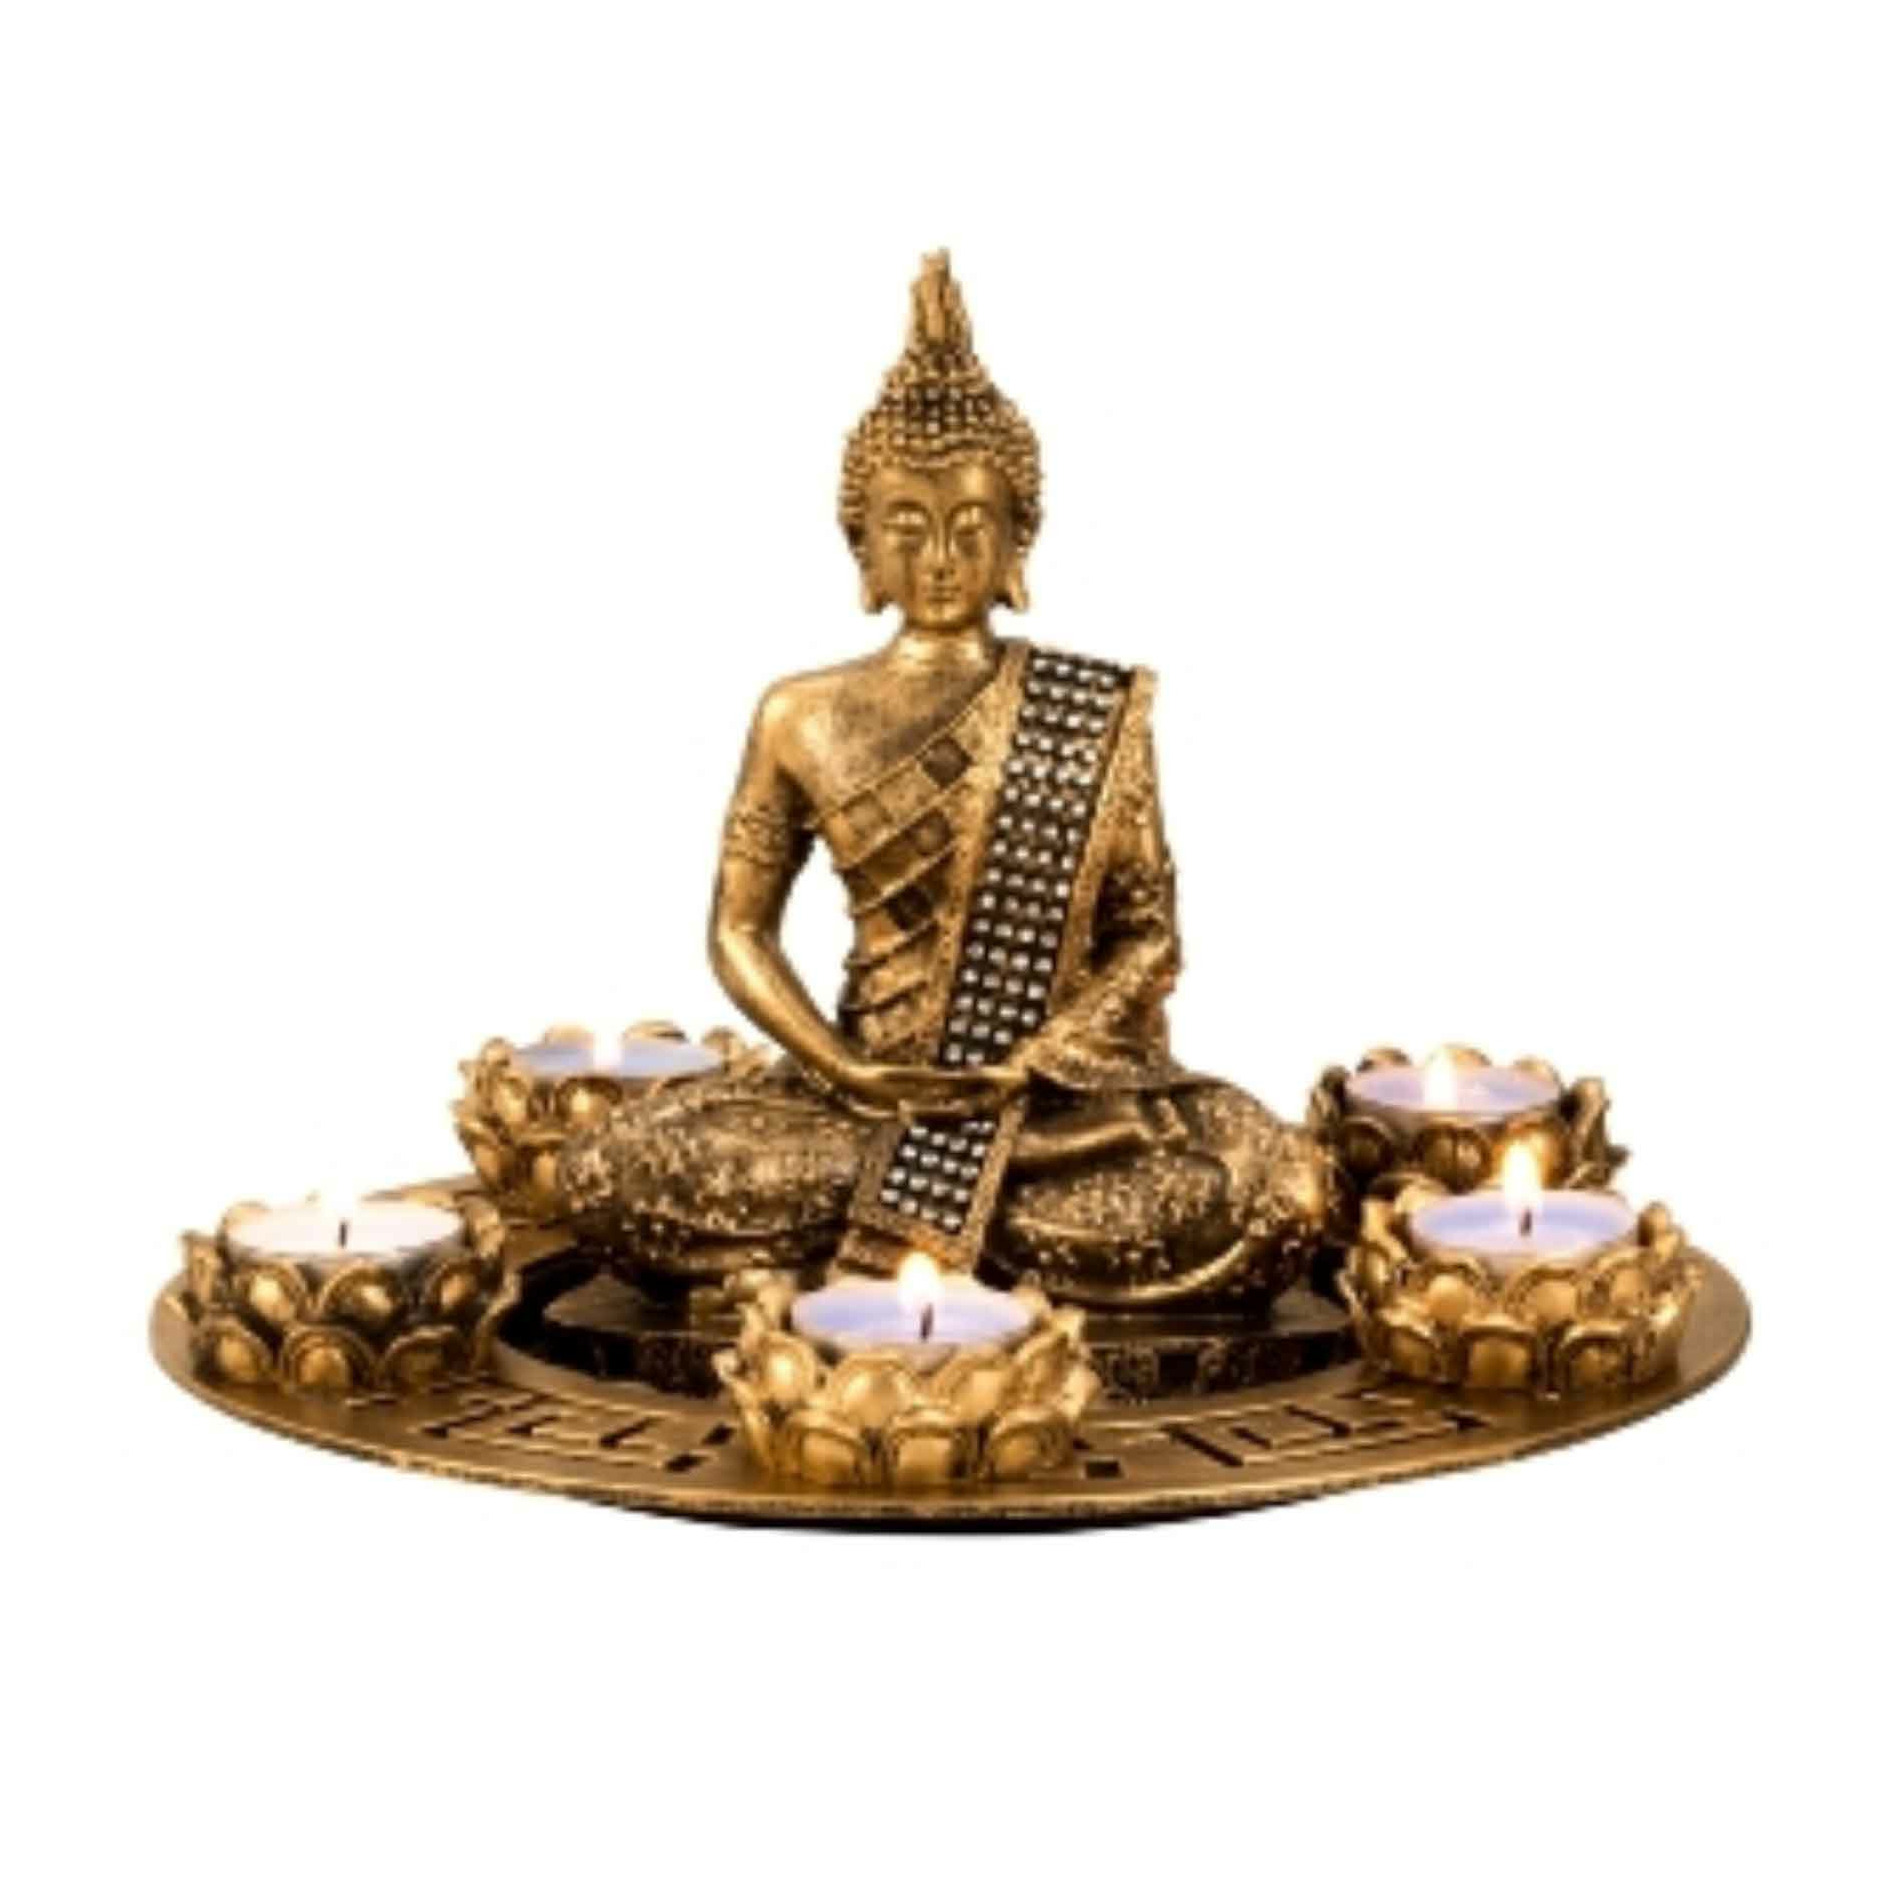 Merkloos Boeddha beeldje met 5 kaarshouders op schaal - kunststeen - goud - 27 x 20 cm - deco artikel -